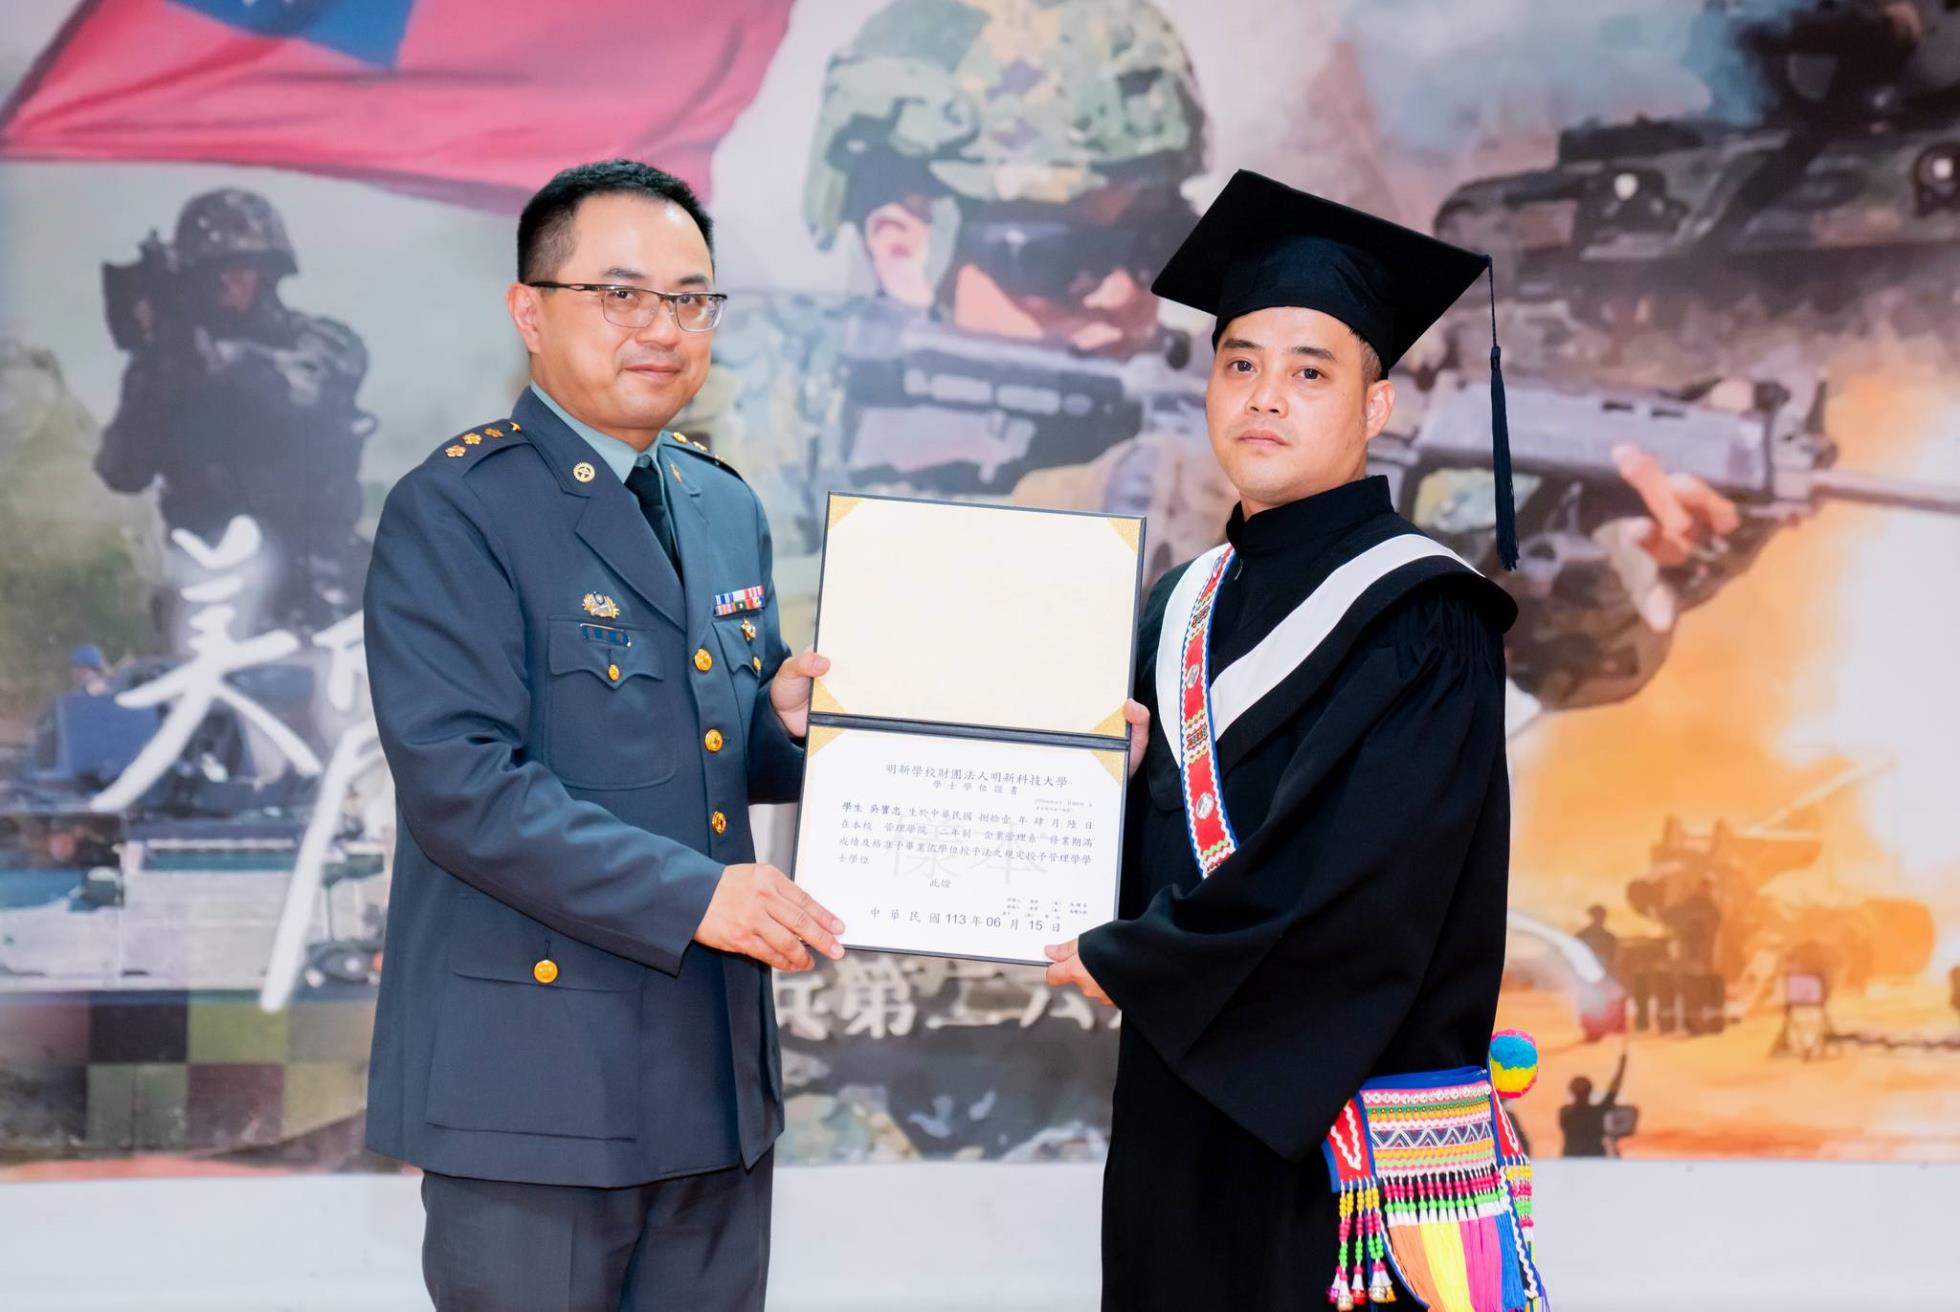 031陸軍269旅副旅長張上校頒發畢業證書予畢業生吳寶忠同學(技企四乙康樂)